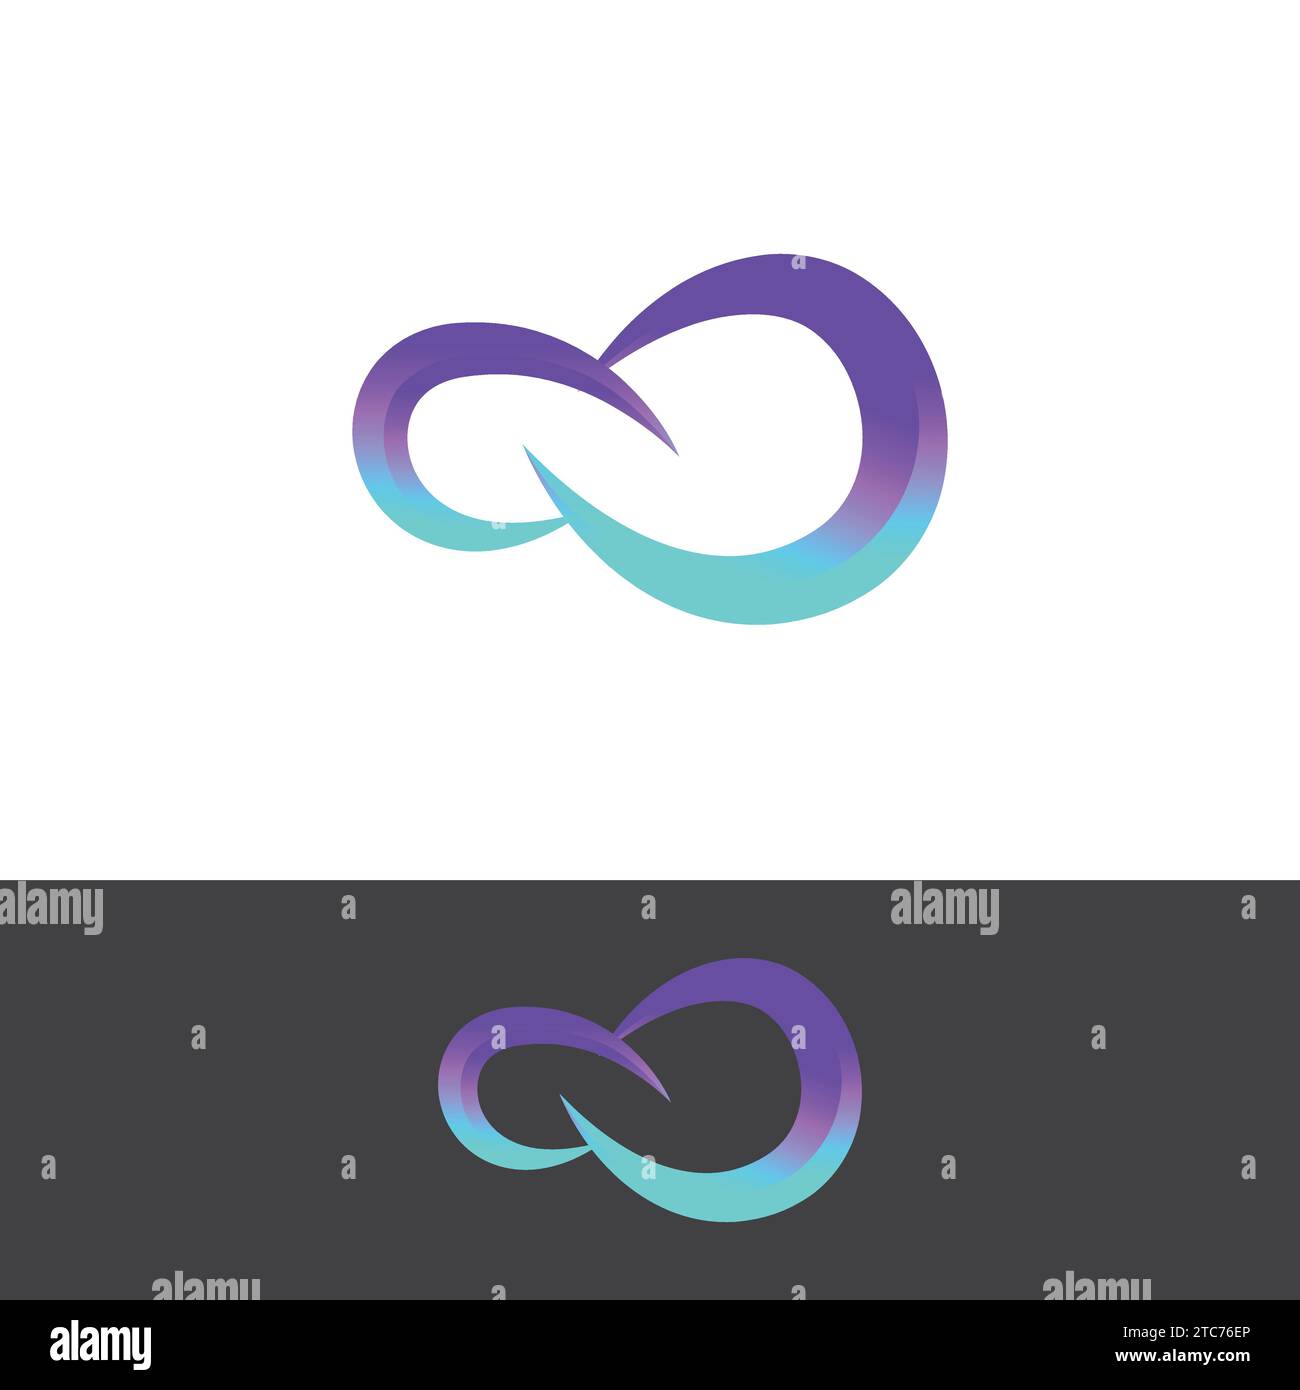 Immagini con logo Infinity disegno illustrativo. design moderno con logo gradient infinity. Modello vettoriale di design con logo senza limiti simbolo infinito Illustrazione Vettoriale